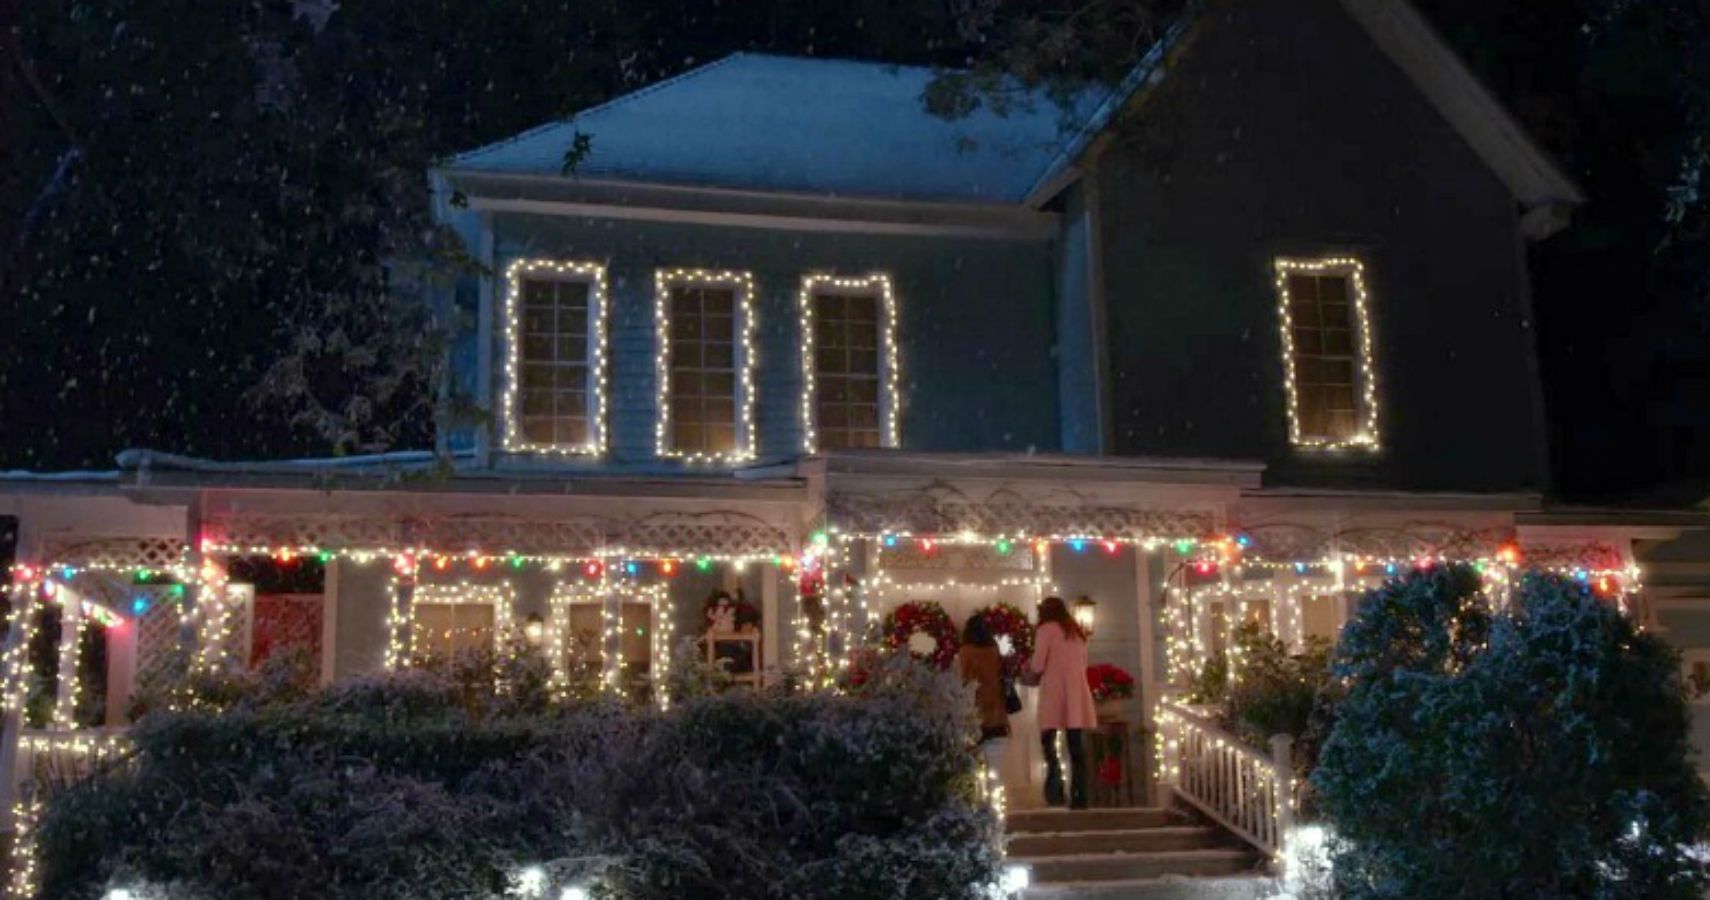 As fãs de Gilmore Girls podem almoçar no Lorelai & Rory's Stars Hollow Home